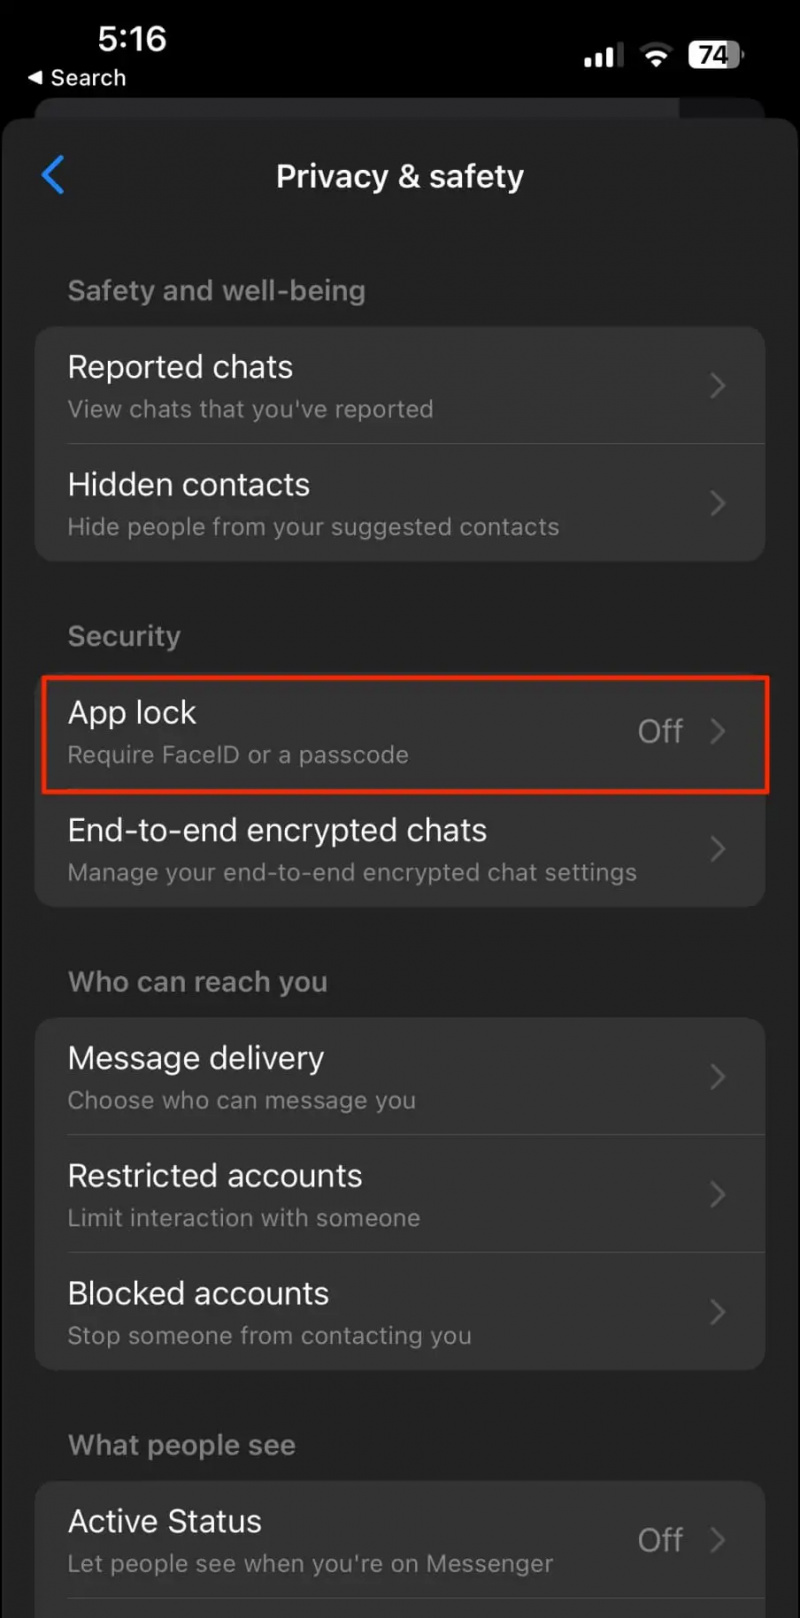   Kunci Aplikasi Messenger di iPhone